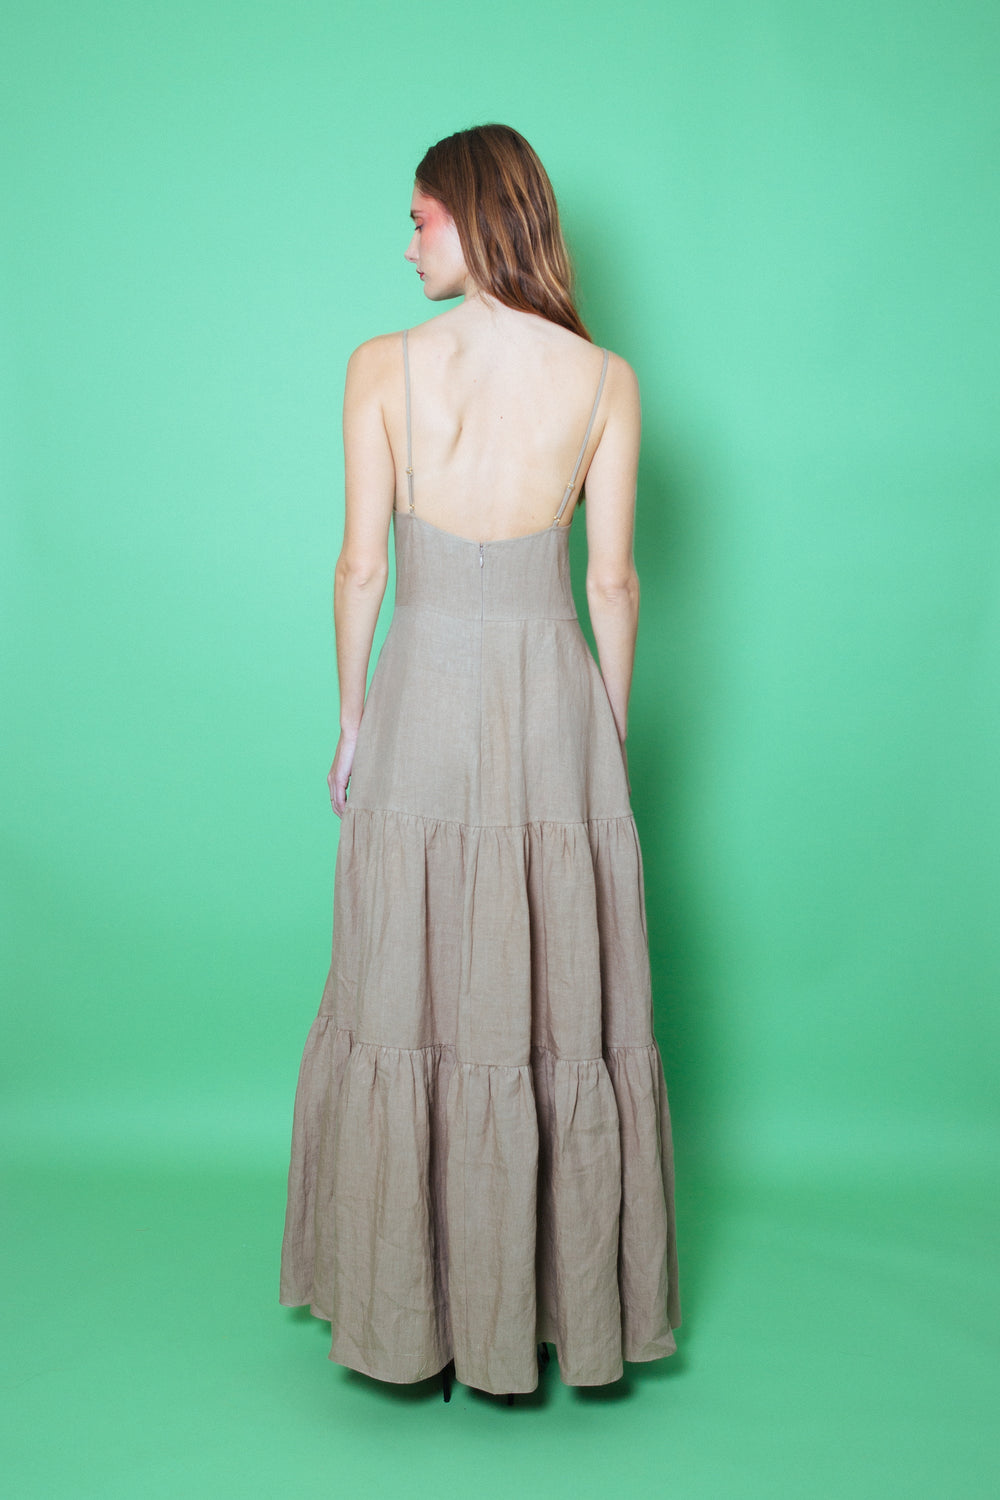 Del Rey Linen Maxi Dress Natural